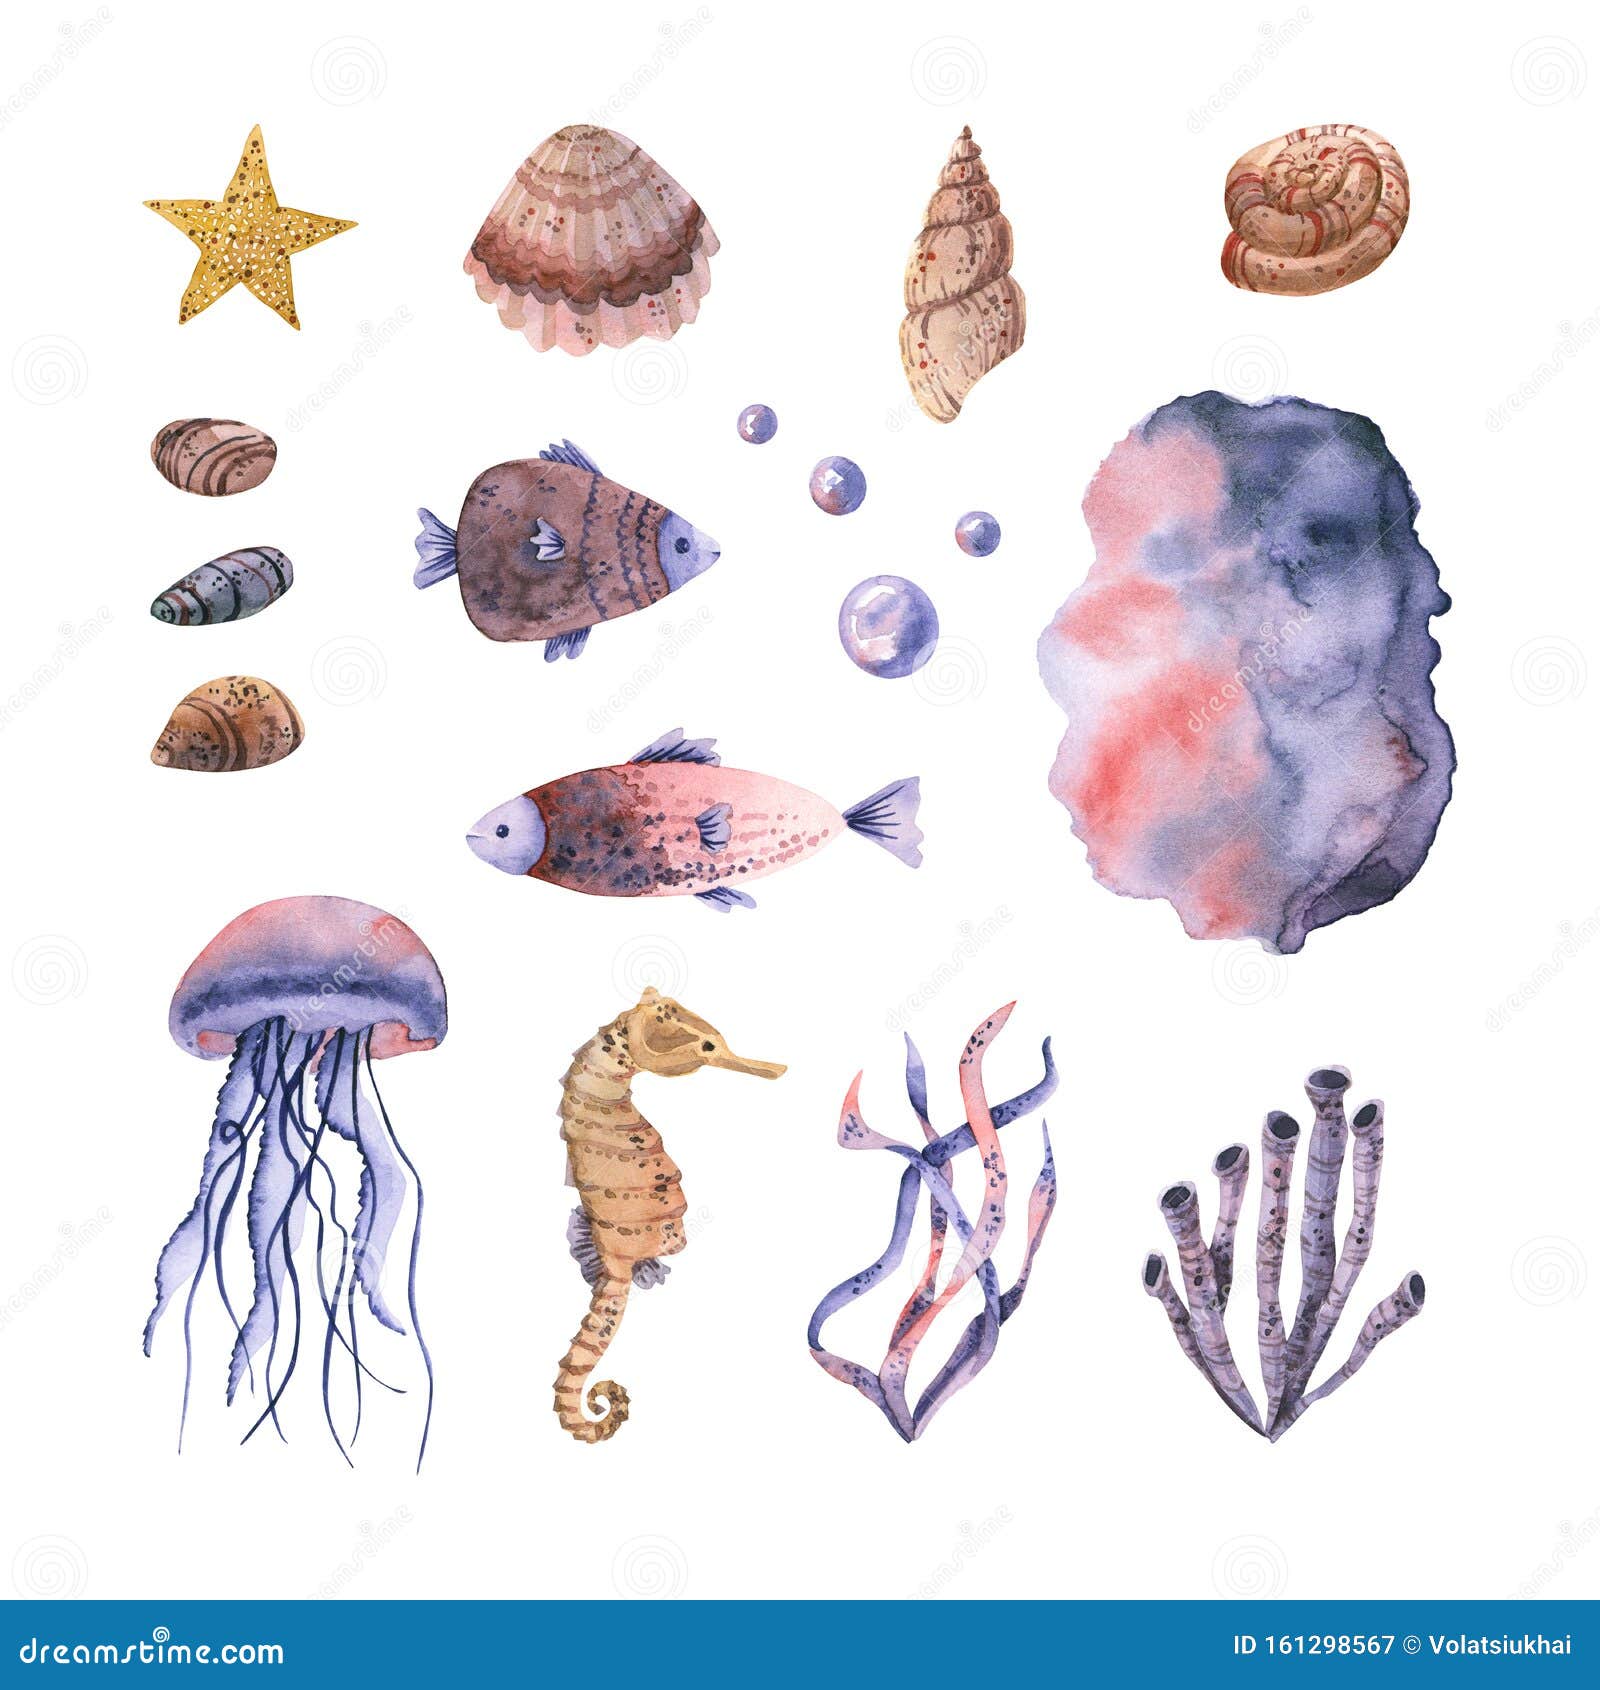 Водоросли ракушки. Ракушки водоросли. Обитатели моря водоросли и моллюски. Море с птицами водоросли ракушки пена картинка для детей 5 лет.